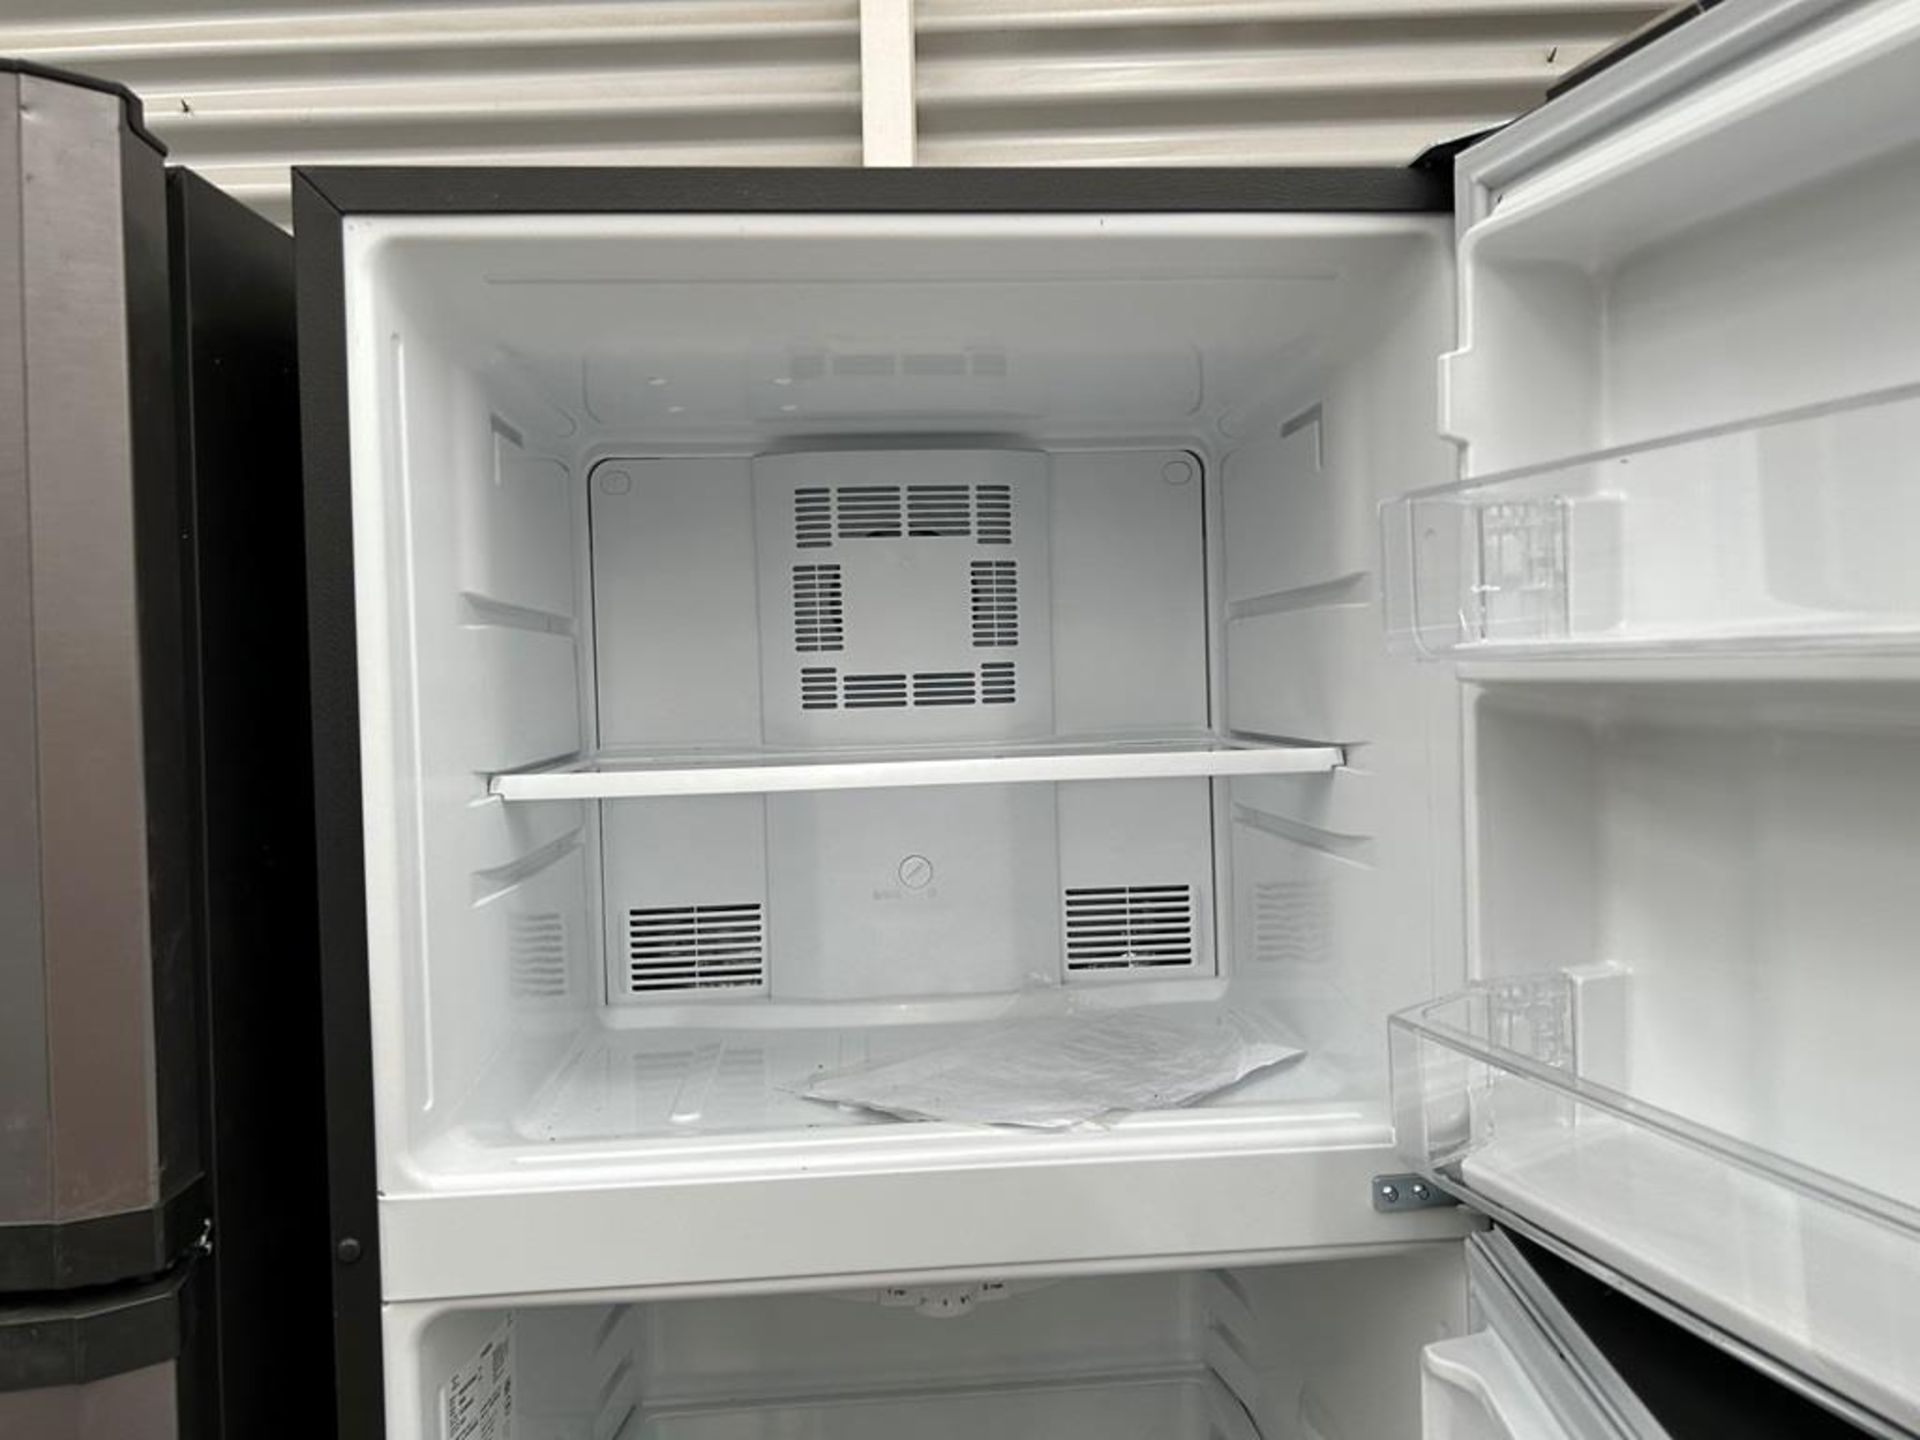 Lote de 2 refrigeradores contiene: 1 Refrigerador Marca MABE, Modelo RME360PVMRM0, Serie 04453, Col - Image 11 of 16